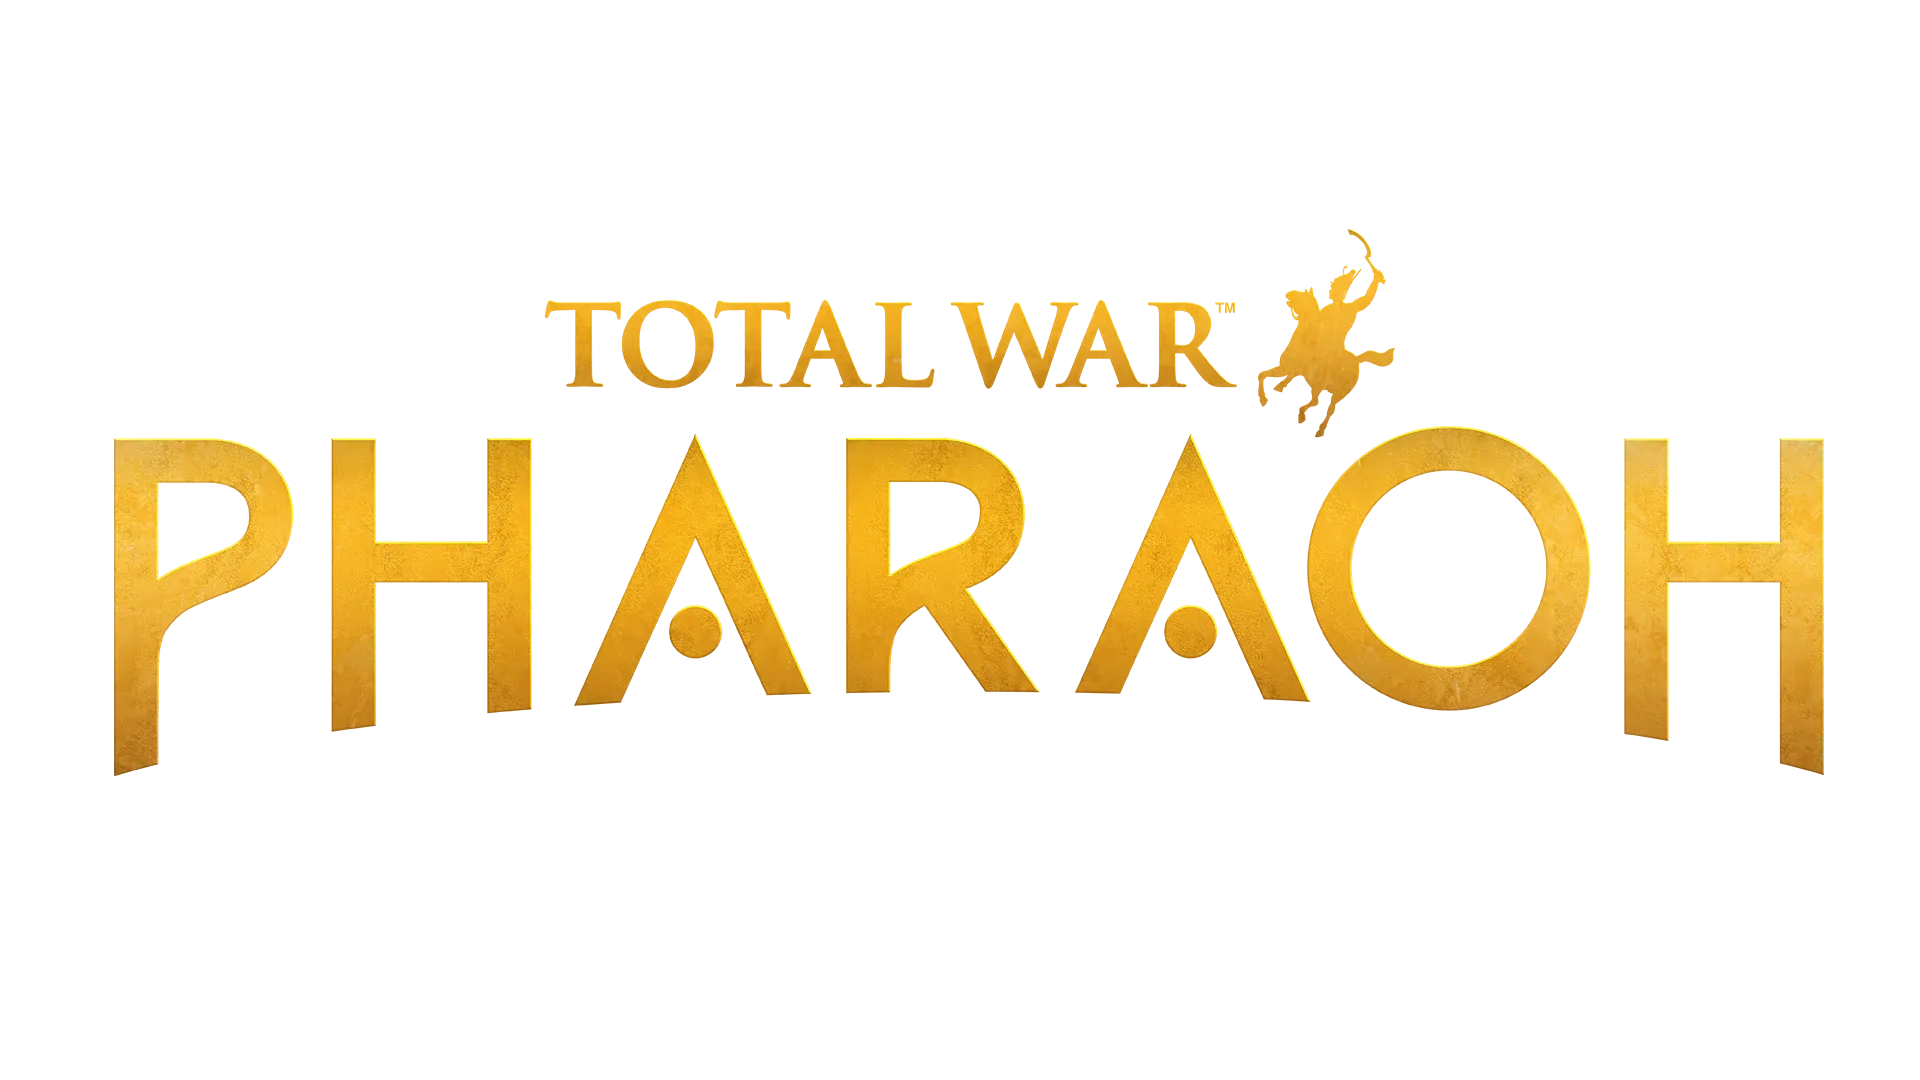 Total war pharaoh title